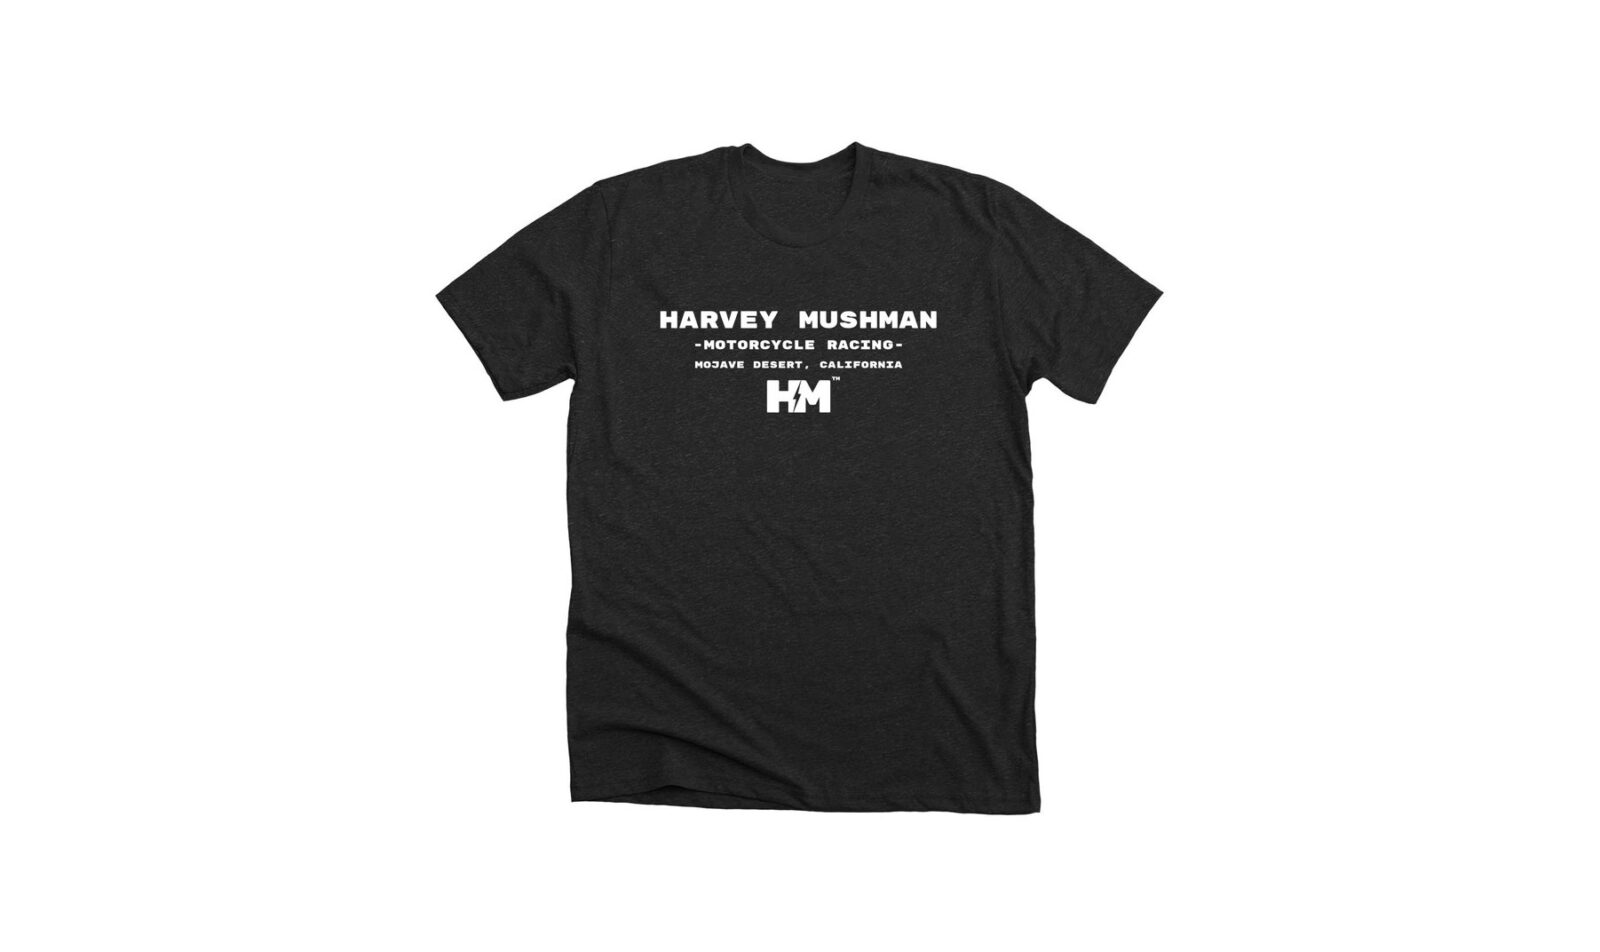 Harvey Mushman Racing T-Shirt Steve McQueen